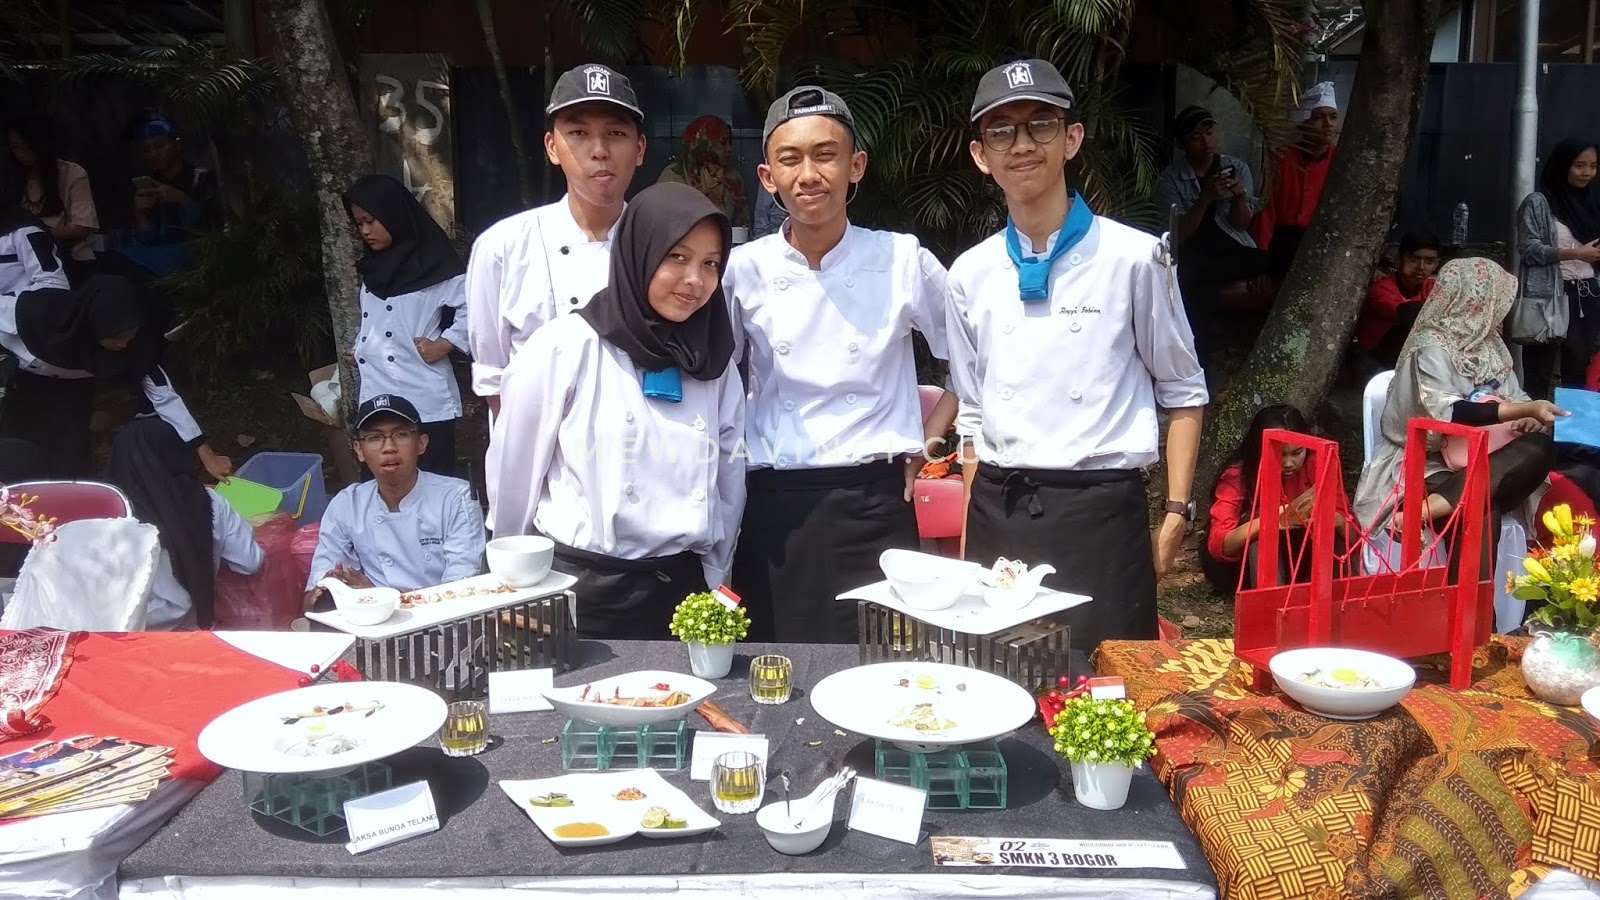 Calon chefs dari SMKN 3 Bogor